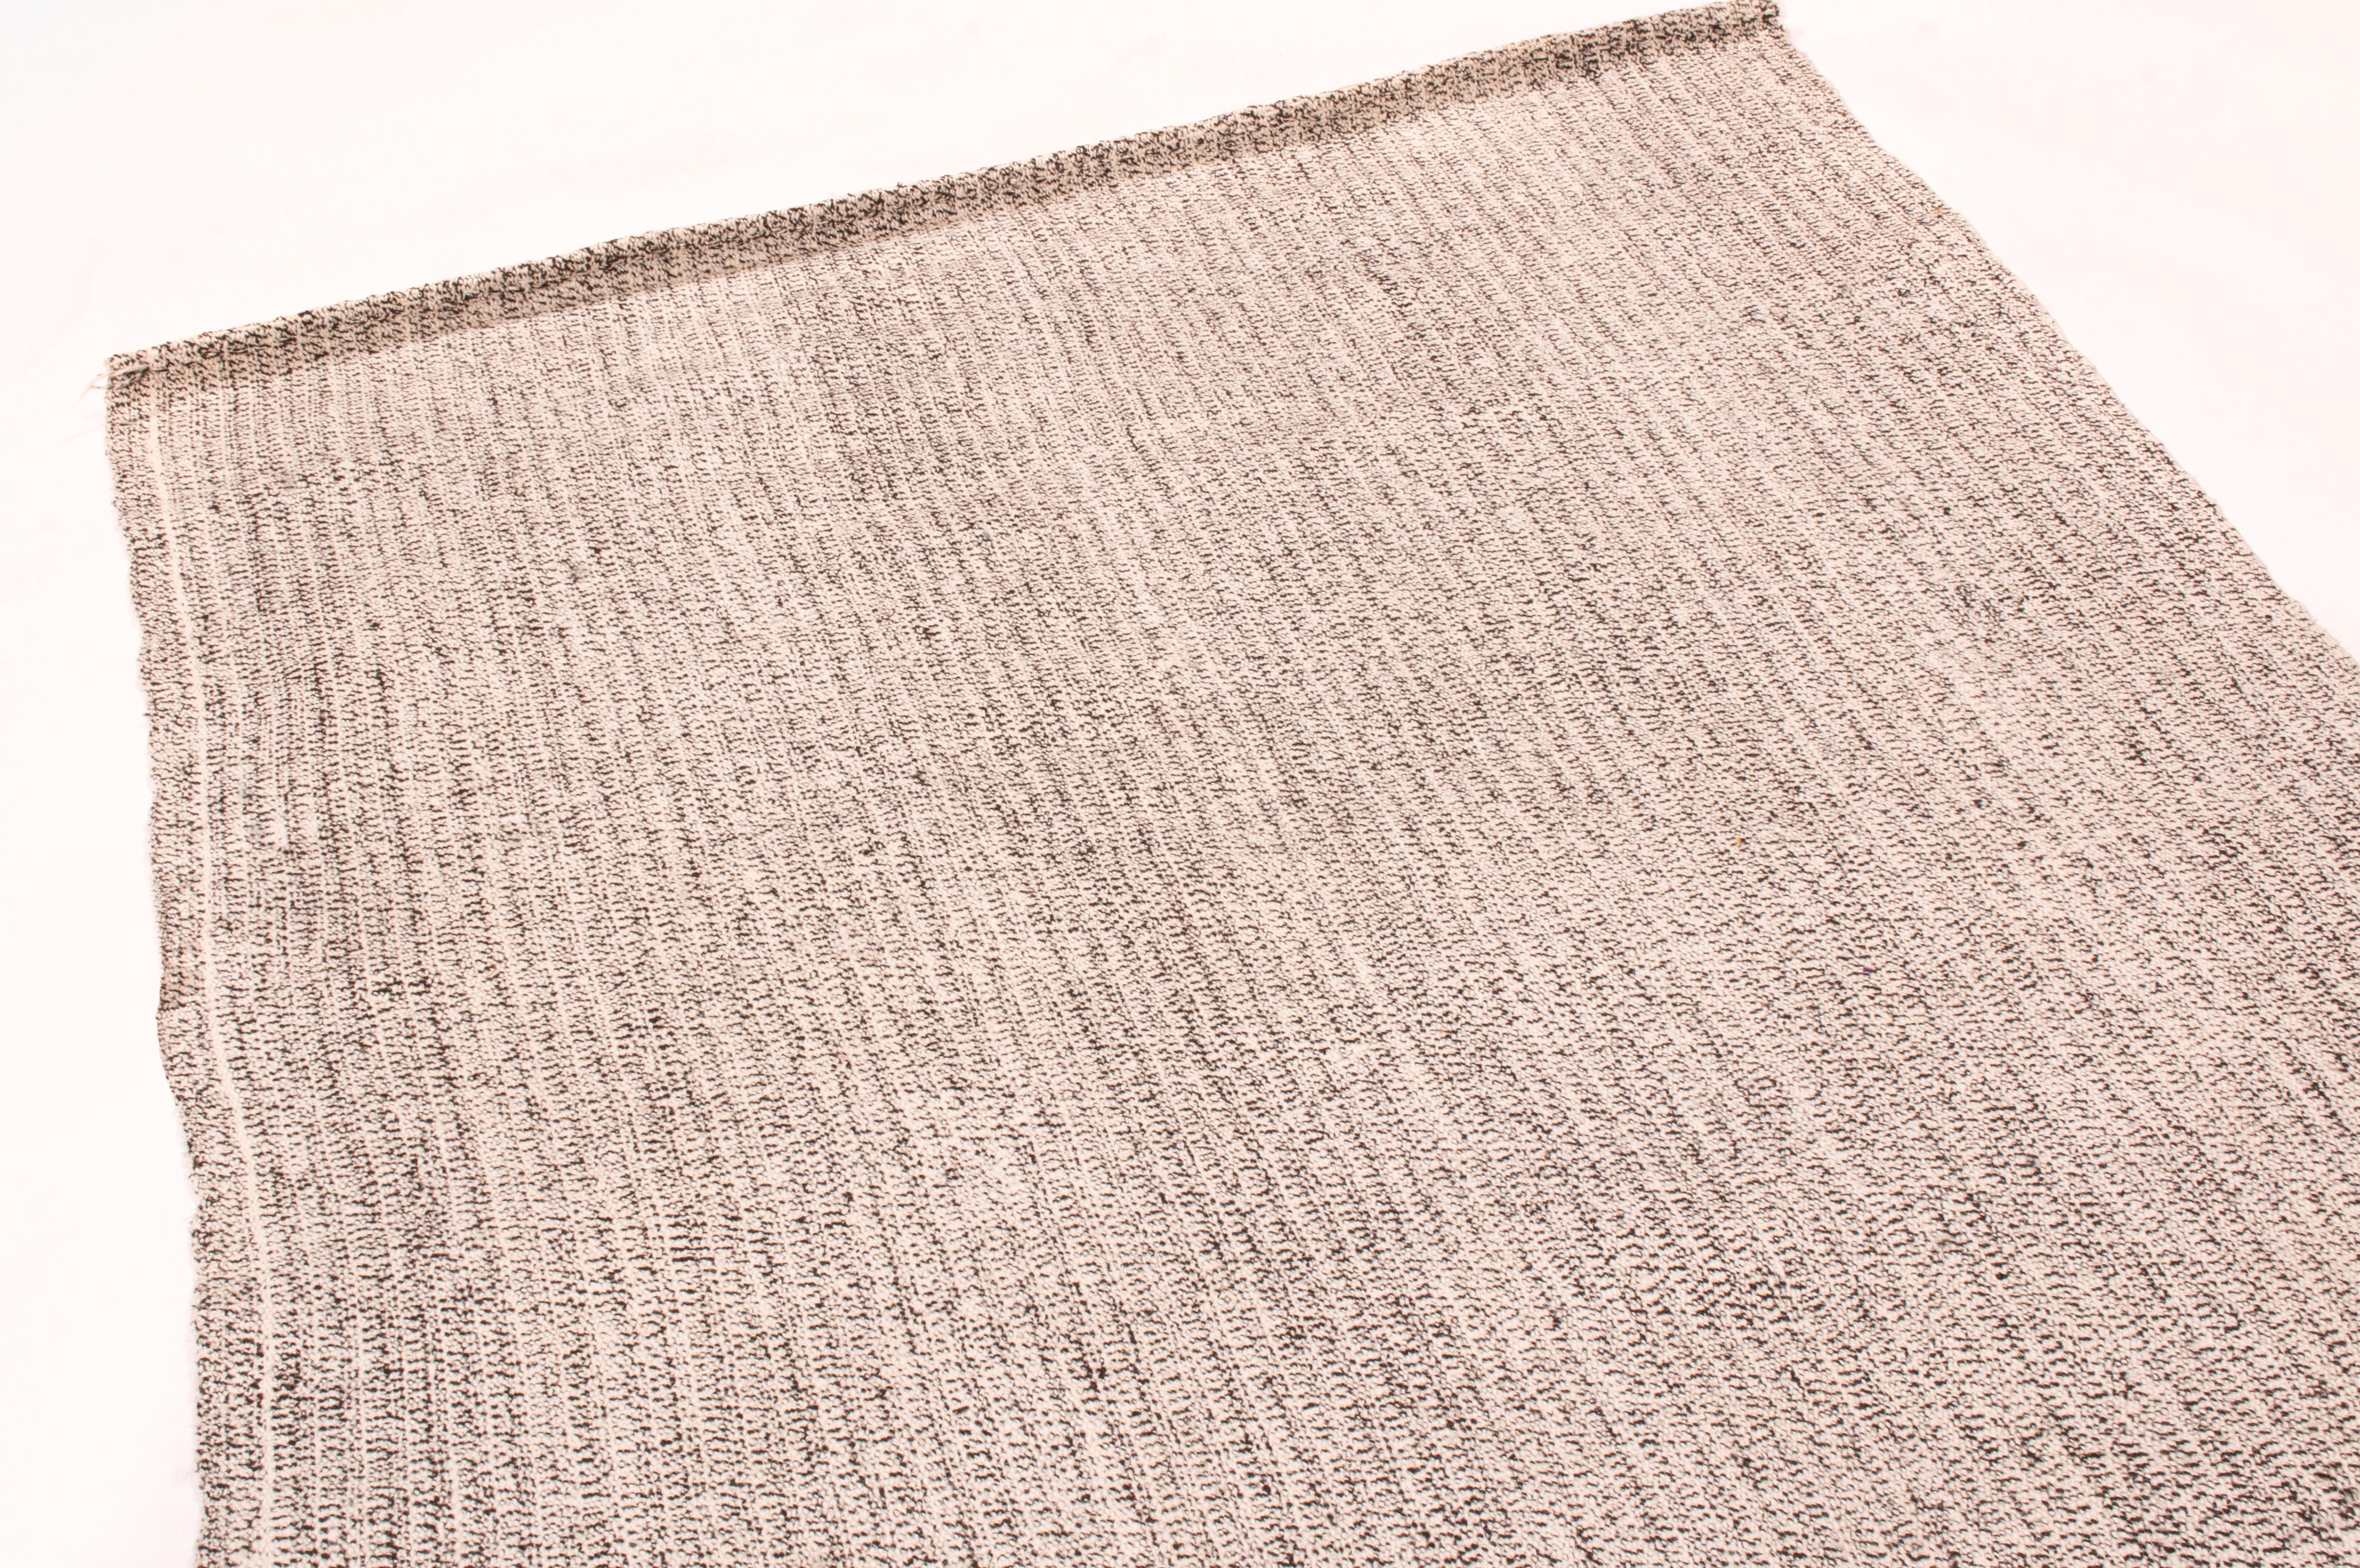 Originaire de Turquie en 1980, ce tapis kilim vintage en laine est tissé à plat dans une laine de haute qualité avec un abrash contemporain et subtil de couleurs industrielles grises et argentées.